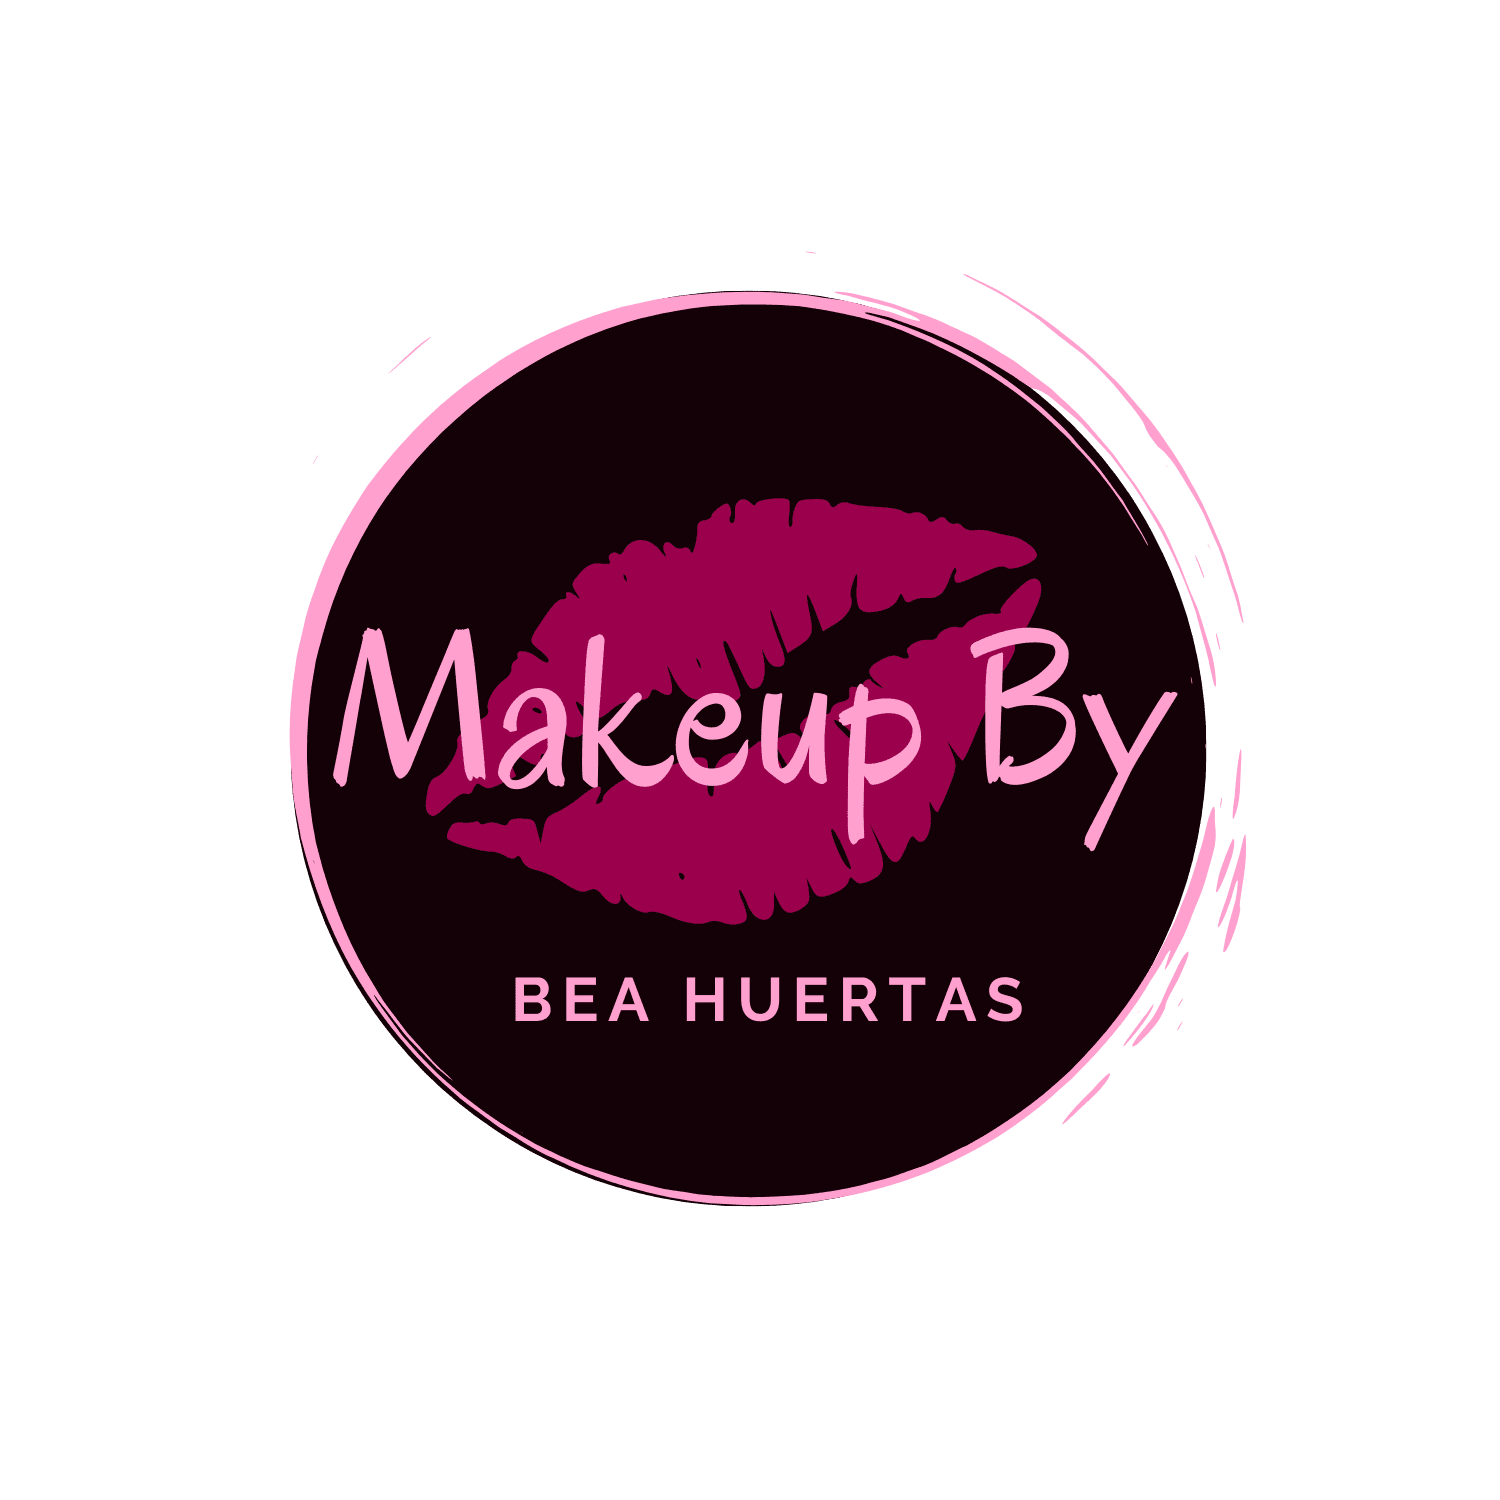 Makeup by Bea Huertas